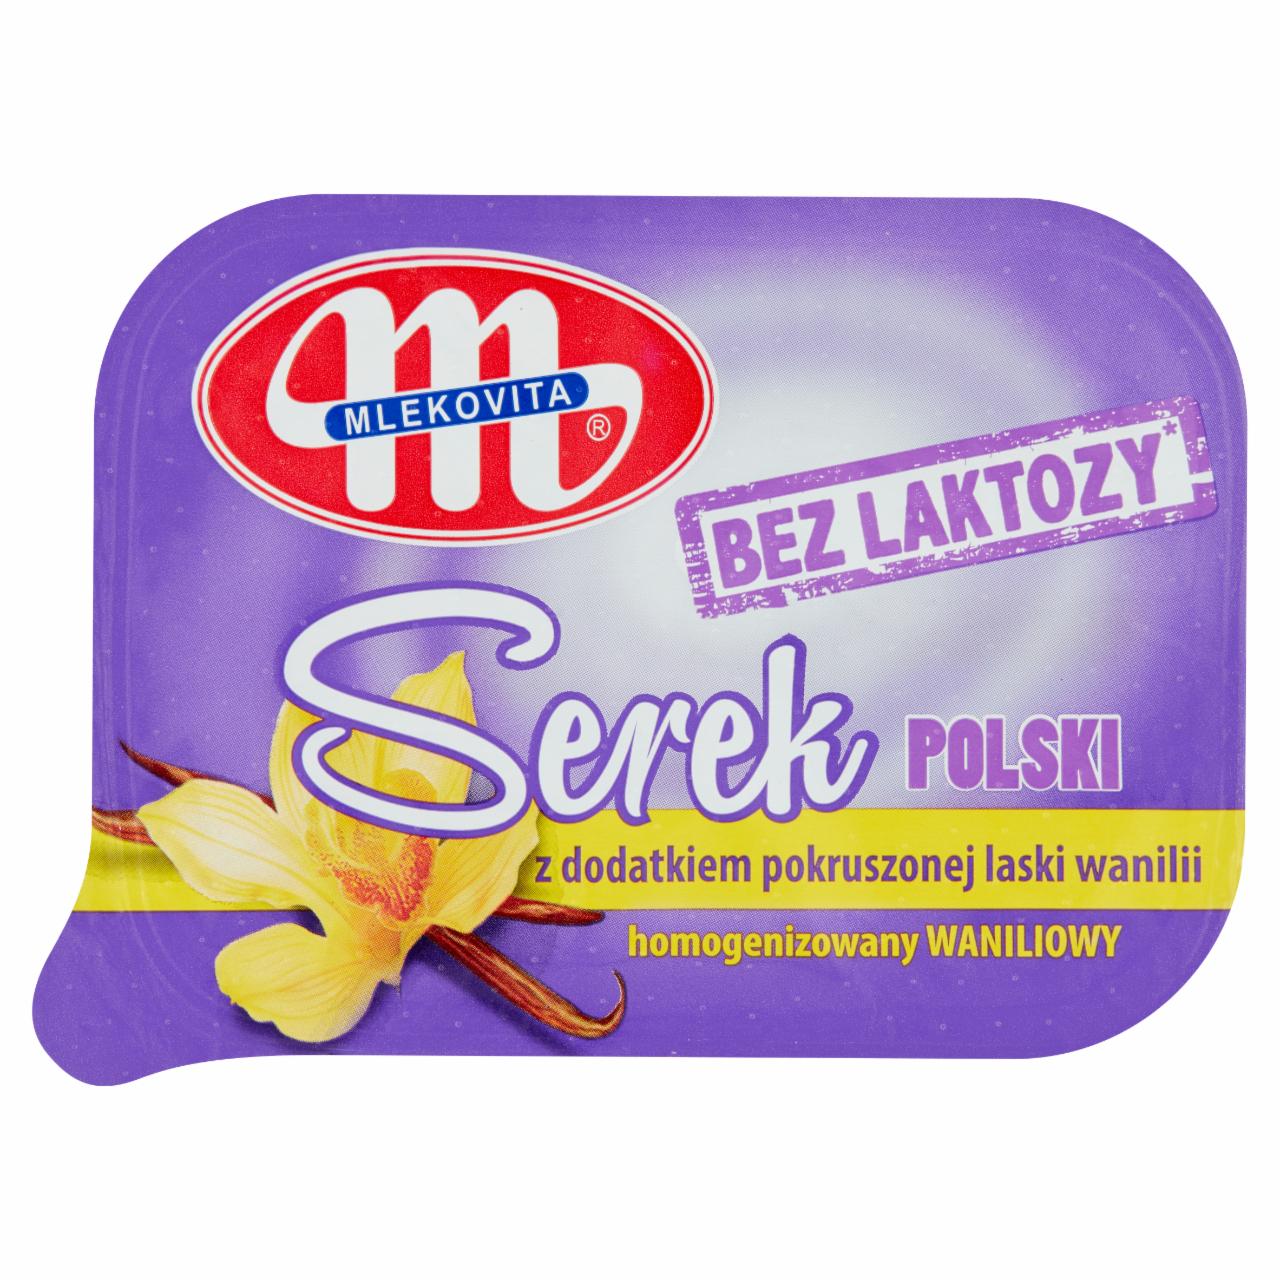 Фото - Сыр без лактозы гомогенизированный ванильный Польский Mlekovita